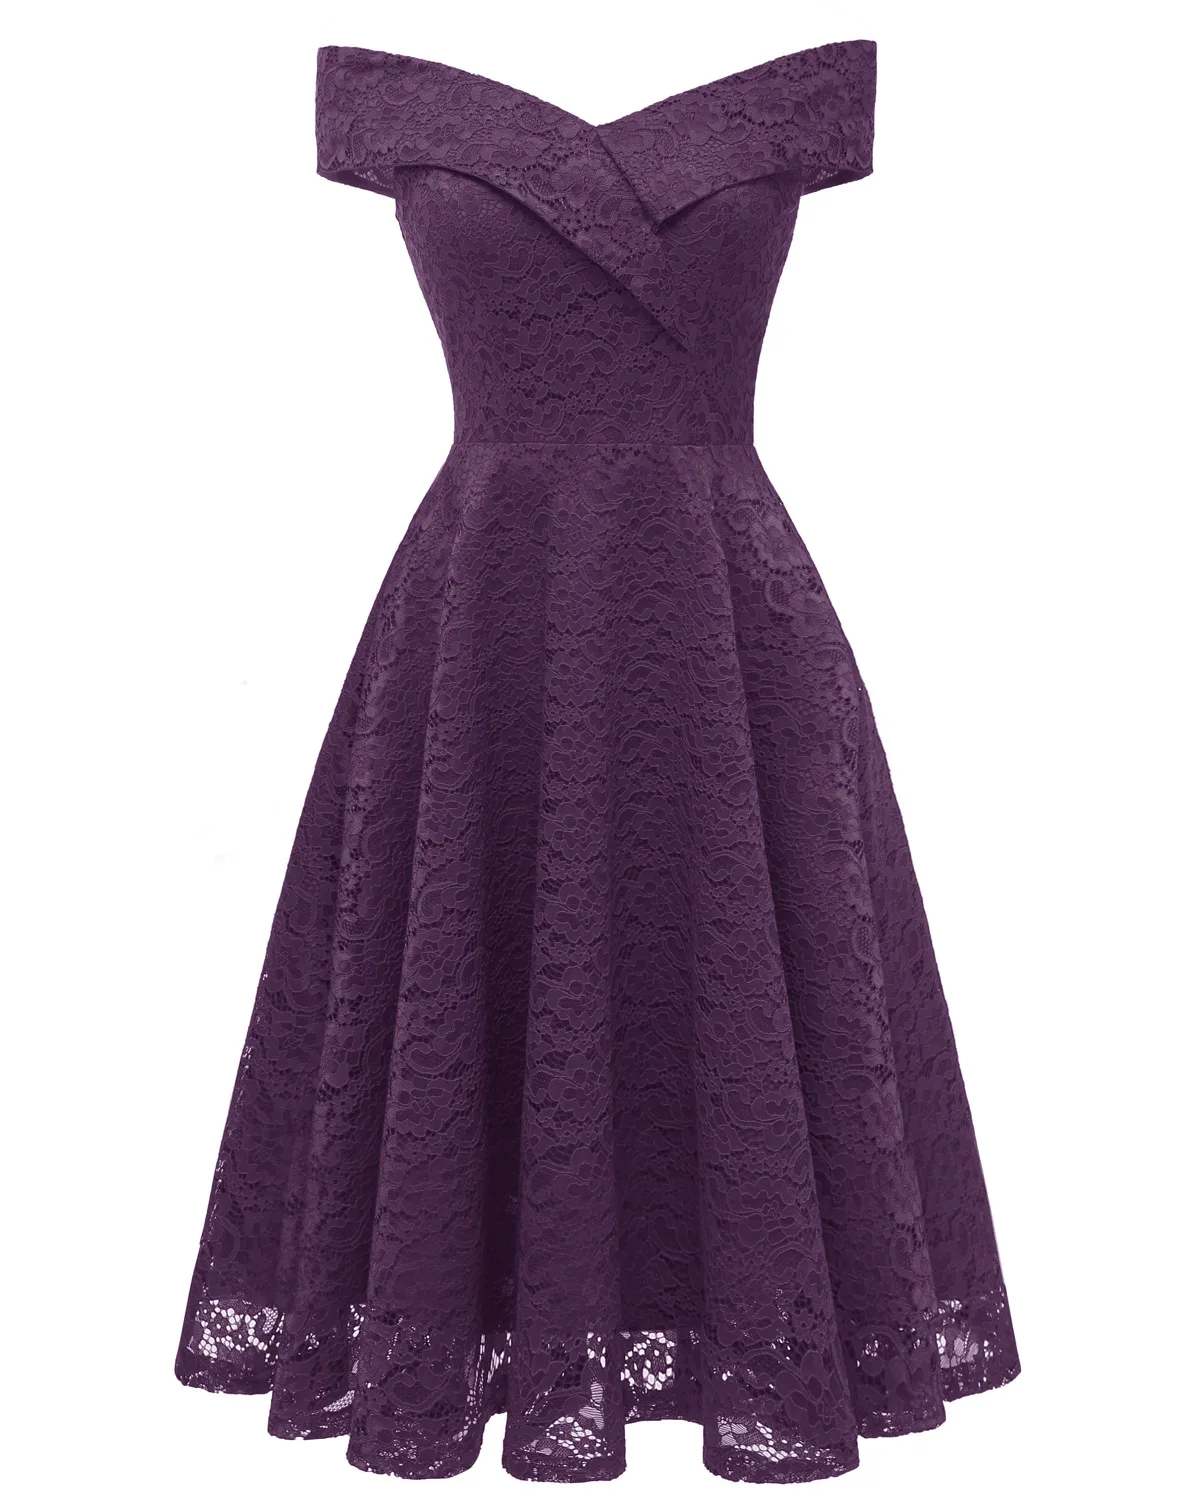 Кружевное платье для девочек-подростков длинное детское вечернее платье с открытыми плечами элегантное вечернее платье для выпускного вечера Детские платья для девочек, S-XXL - Цвет: Фиолетовый